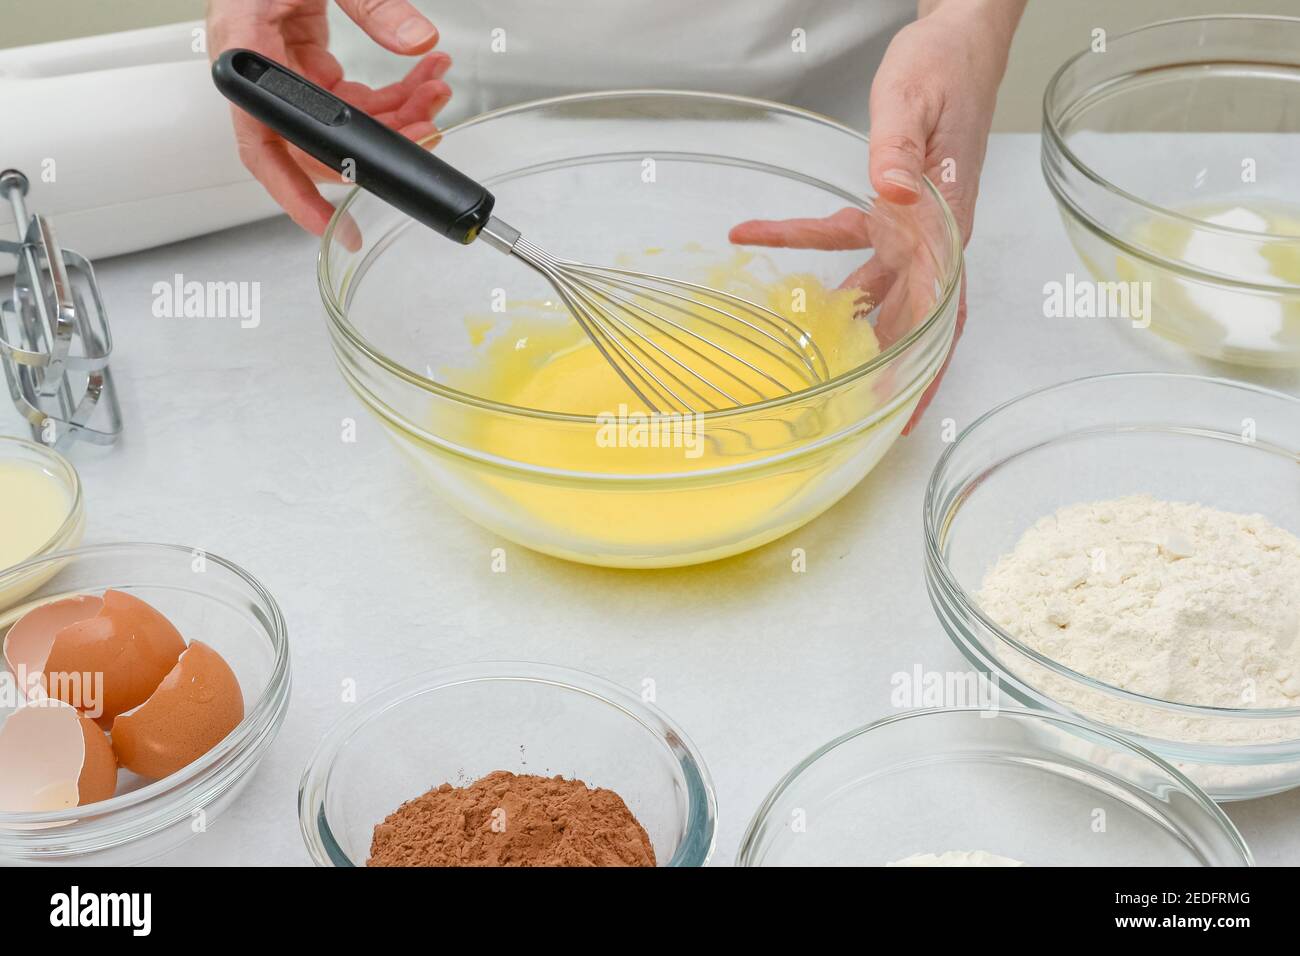 Torta di cioccolato passo dopo passo ricetta. La donna sbatte i tuorli d'uovo con lo zucchero in un recipiente di vetro, primo piano il processo di preparazione Foto Stock